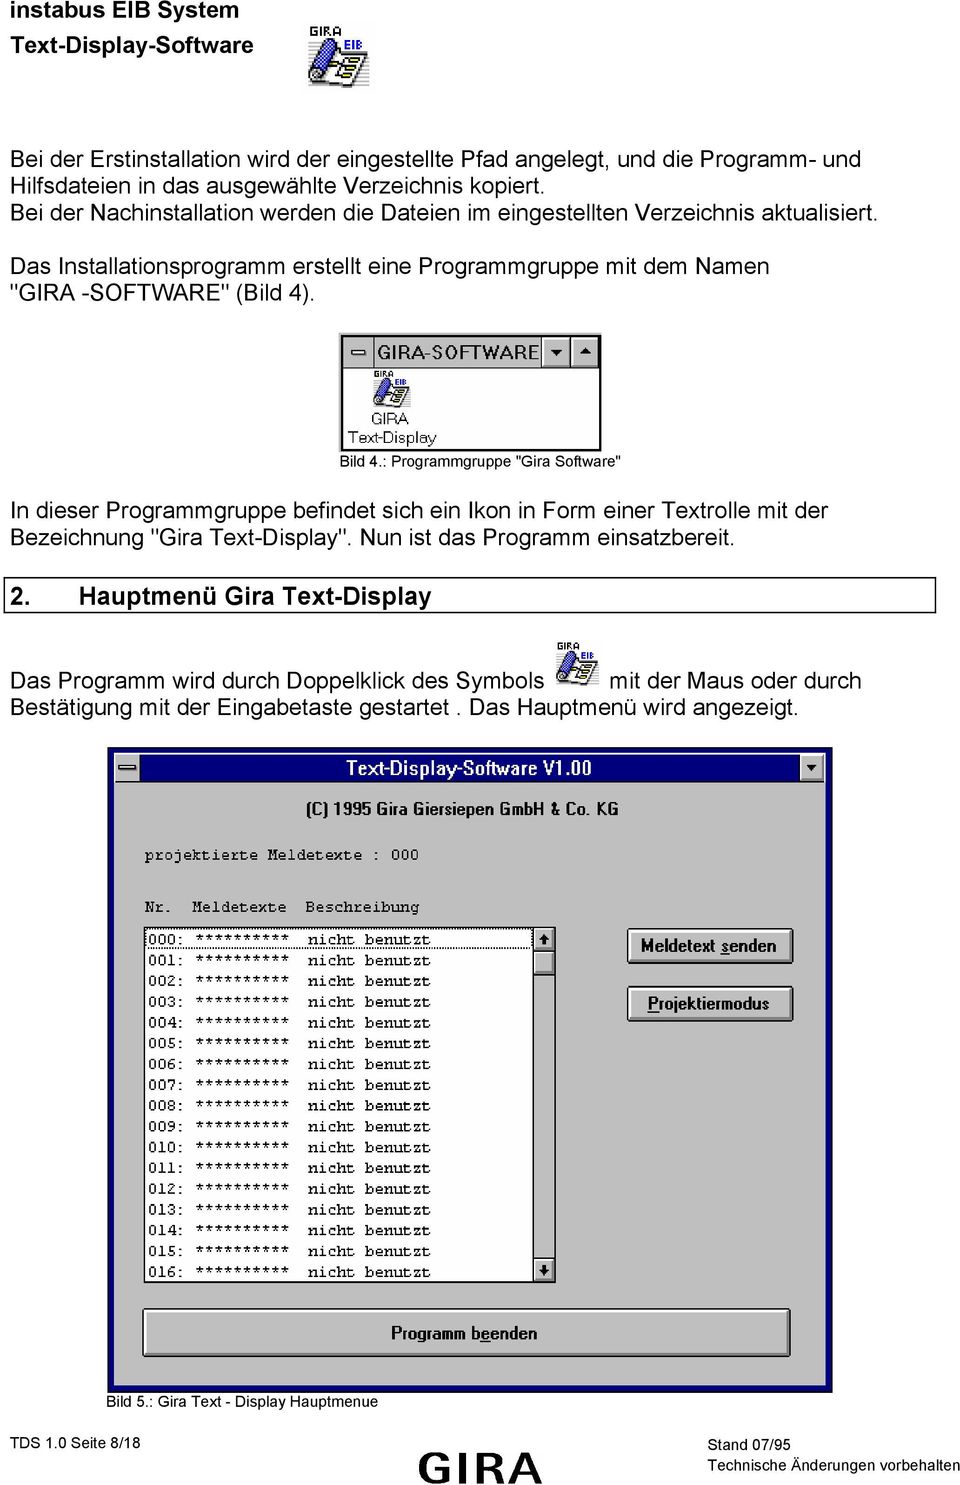 Bild 4.: Programmgruppe "Gira Software" In dieser Programmgruppe befindet sich ein Ikon in Form einer Textrolle mit der Bezeichnung "Gira Text-Display". Nun ist das Programm einsatzbereit.